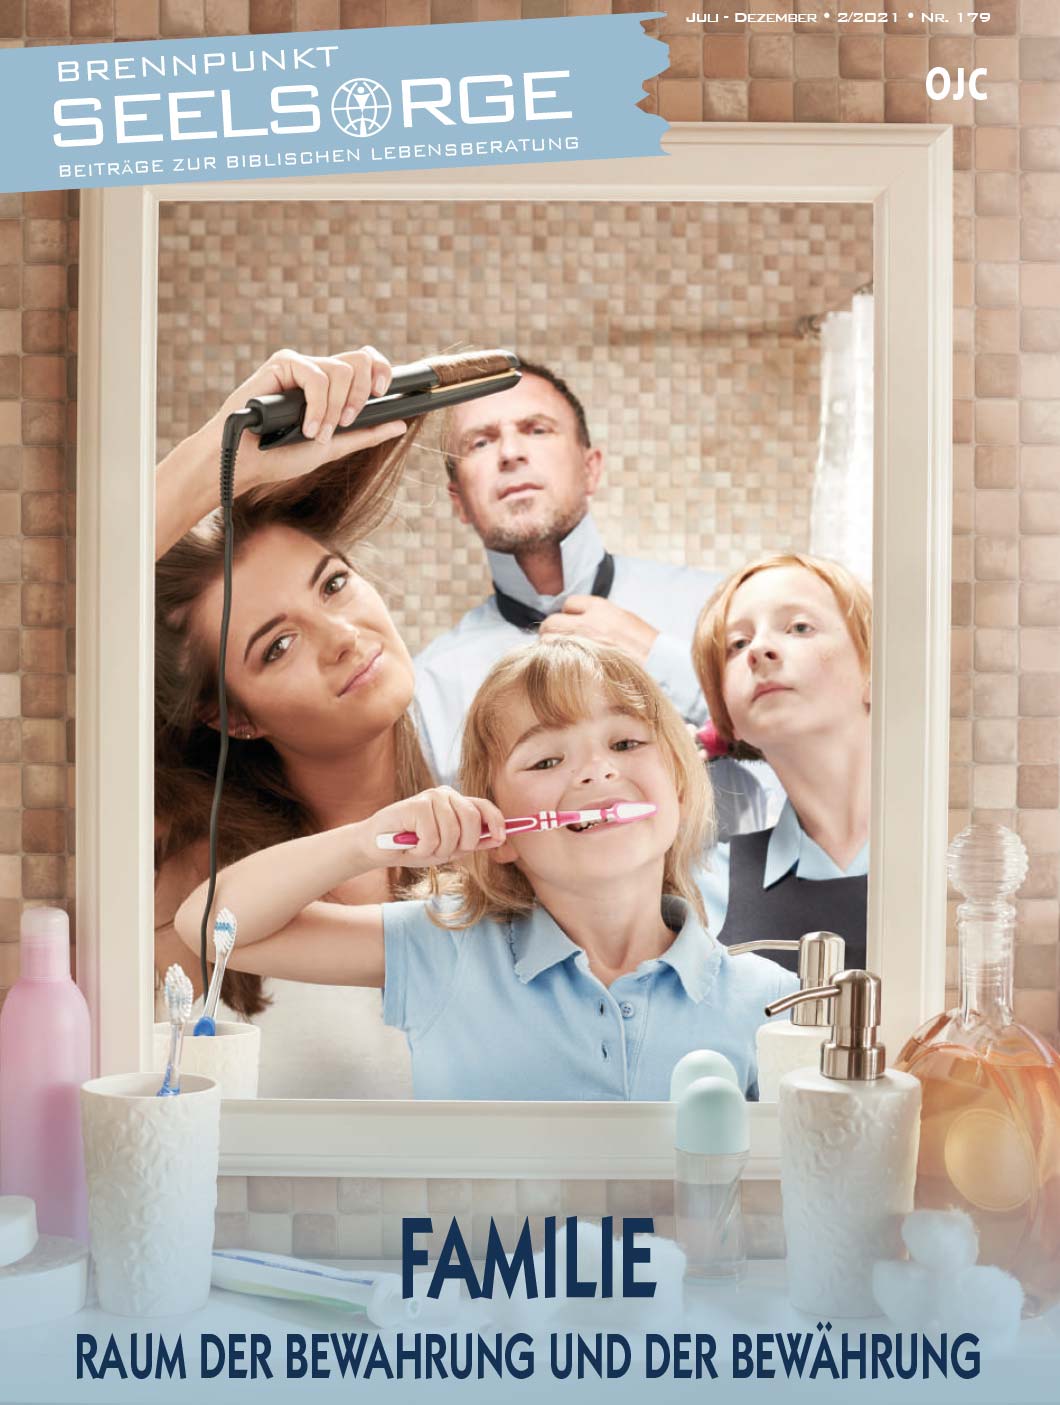 Brennpunkt-Seelsorge: Magazin-Cover mit Familie vor Badezimmerspiegel